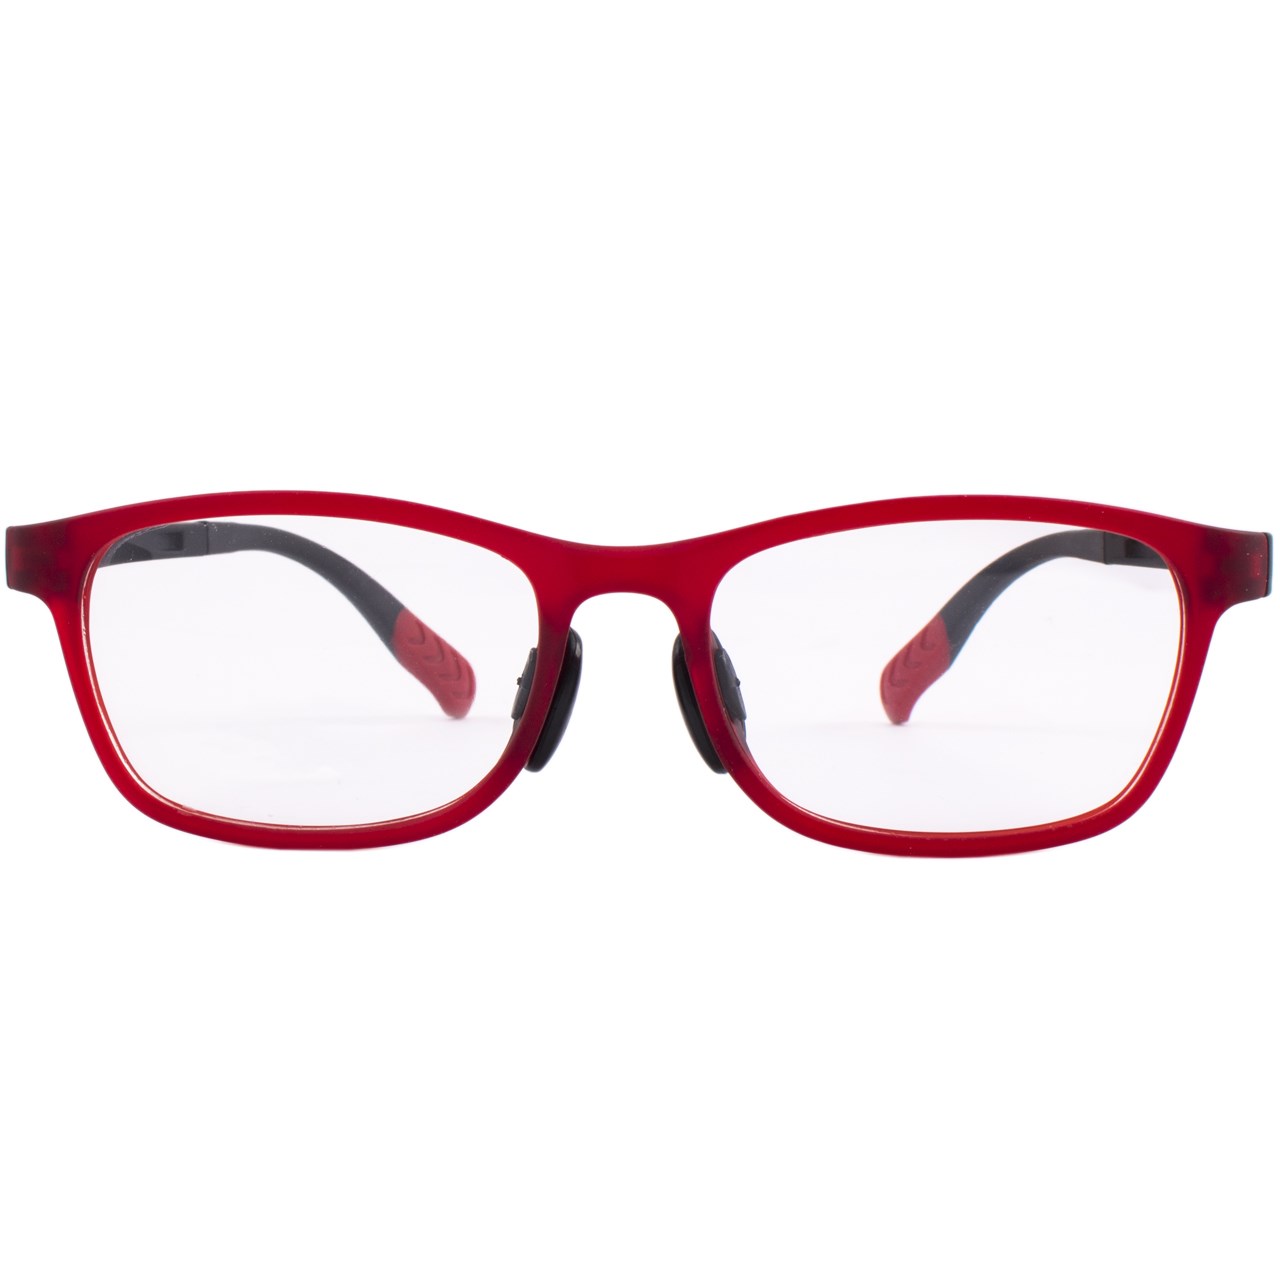 فریم عینک بچگانه واته مدل 2105C7